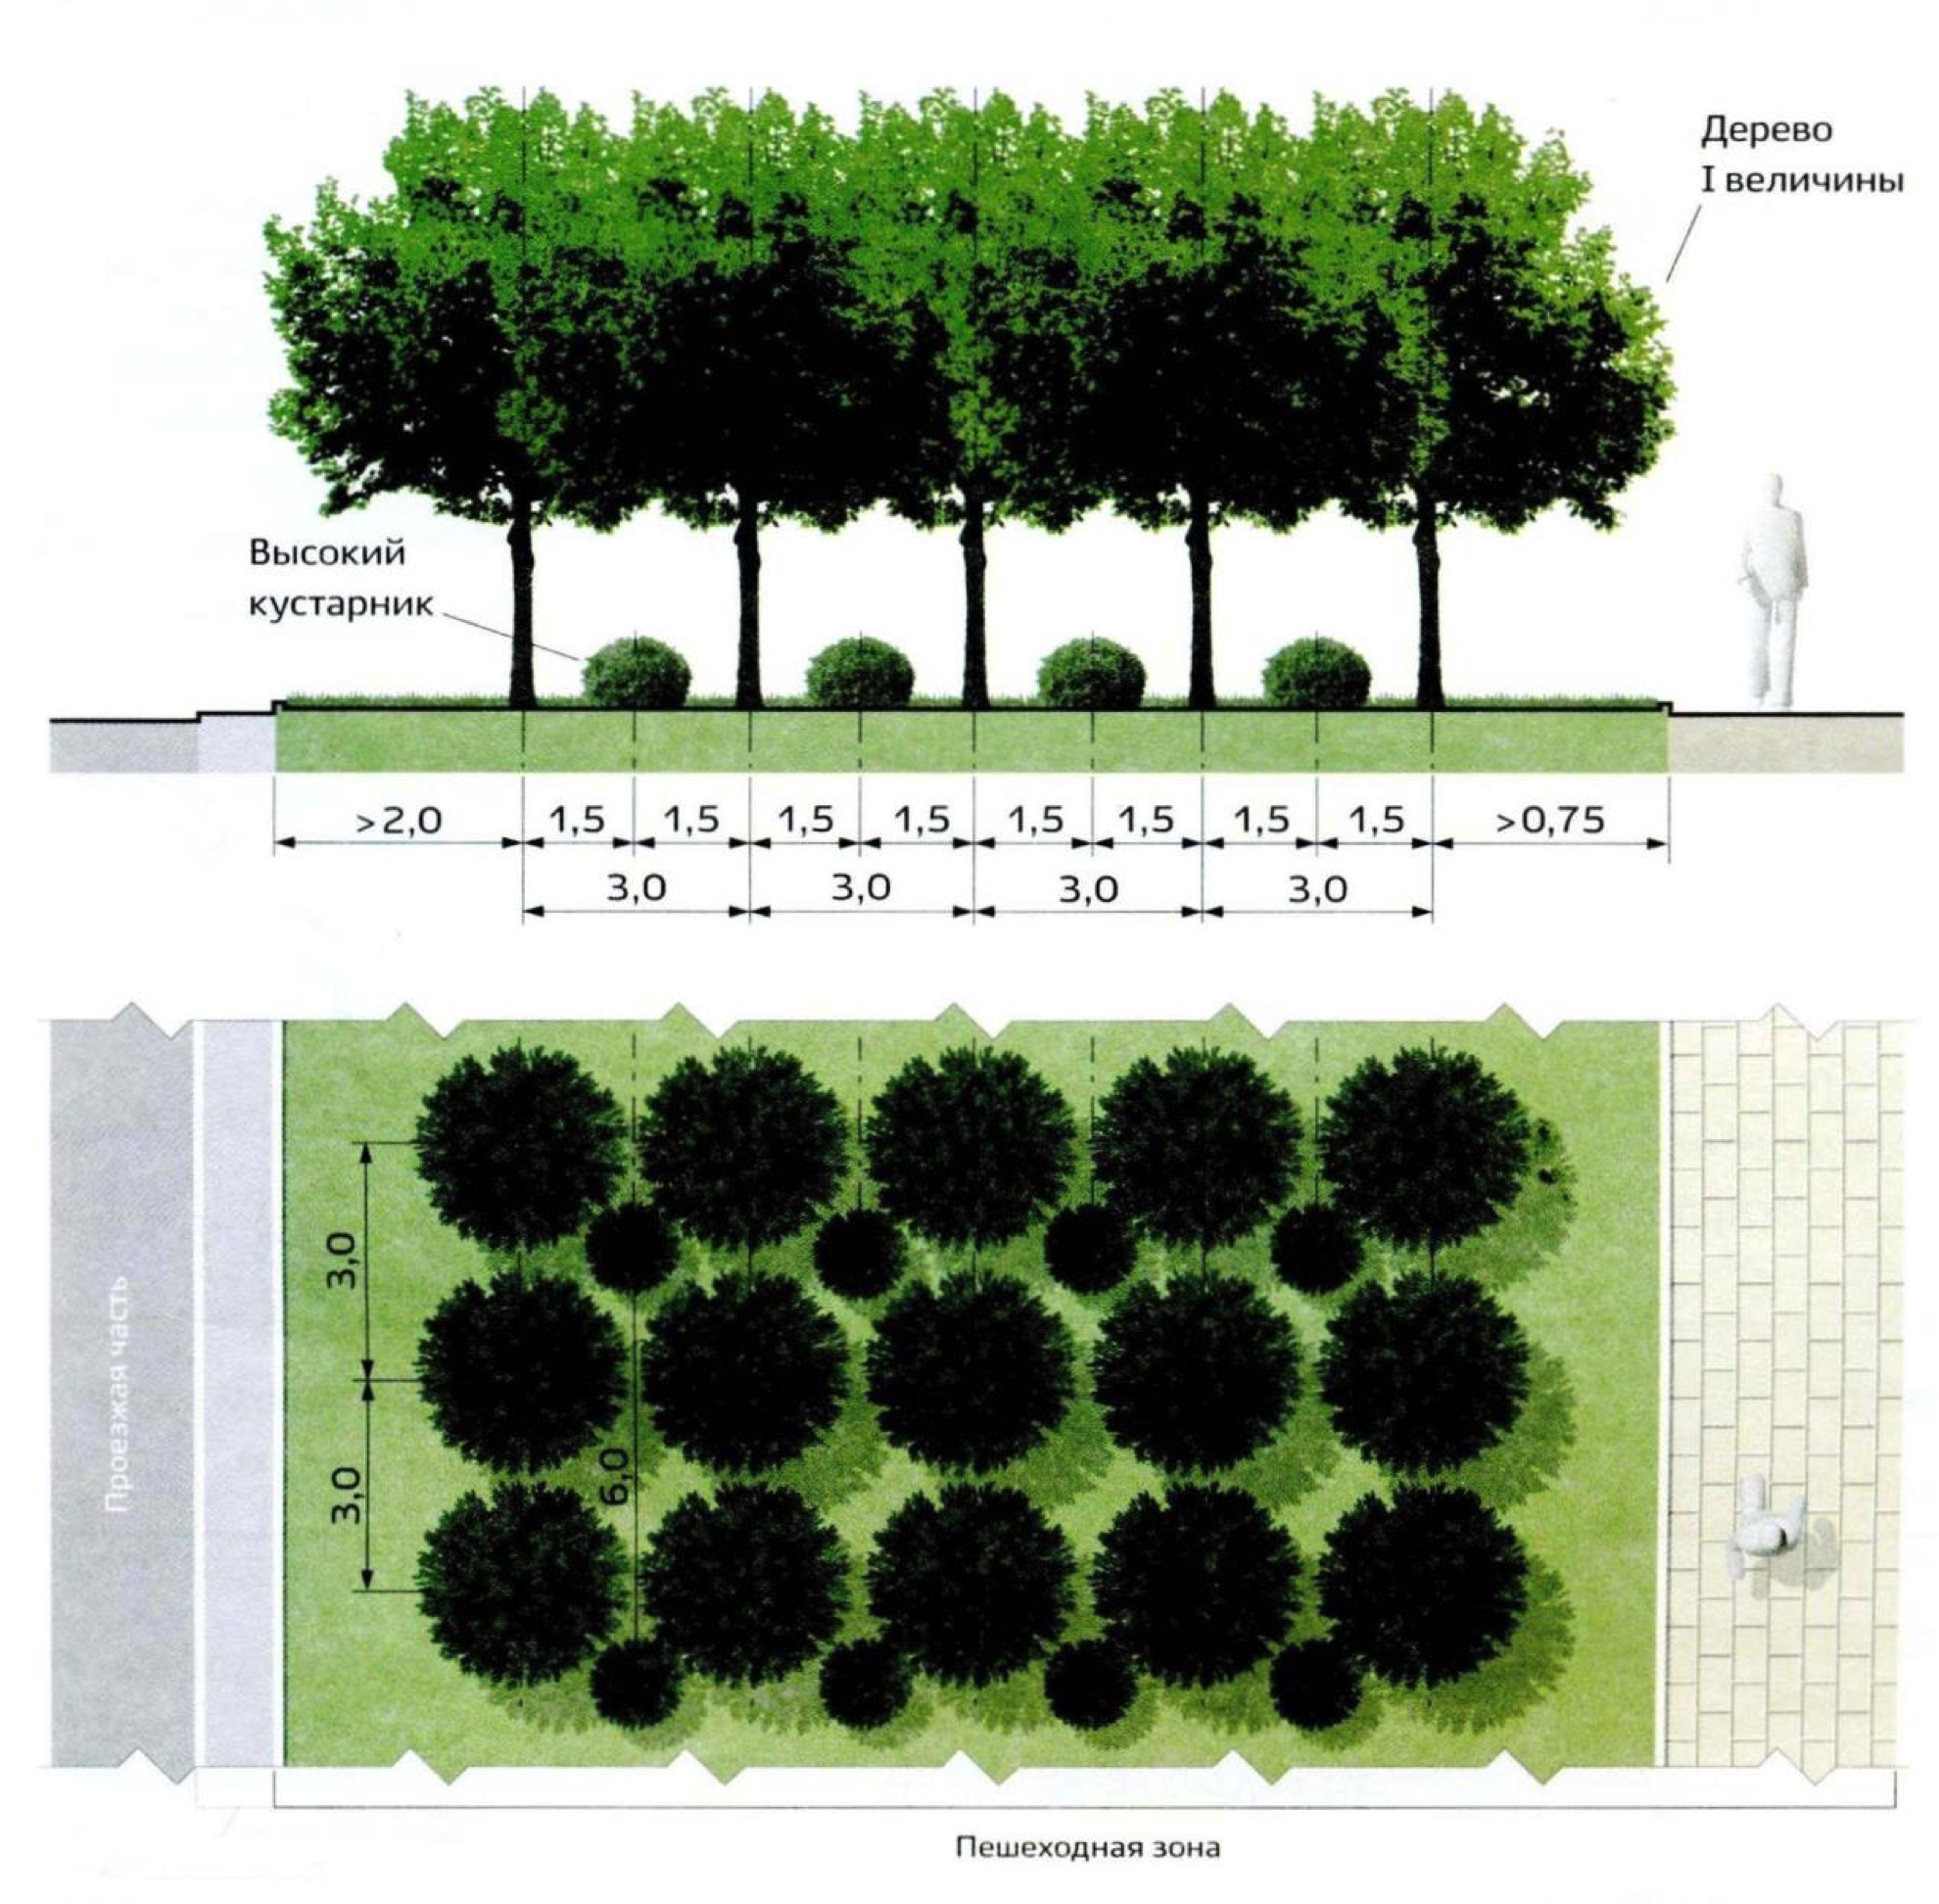 Схема посадки древесных растений. Схема озеленения. Ассортимент деревьев и кустарников для озеленения. Посадка деревьев и кустарников. Как правильно посадить деревья на участке